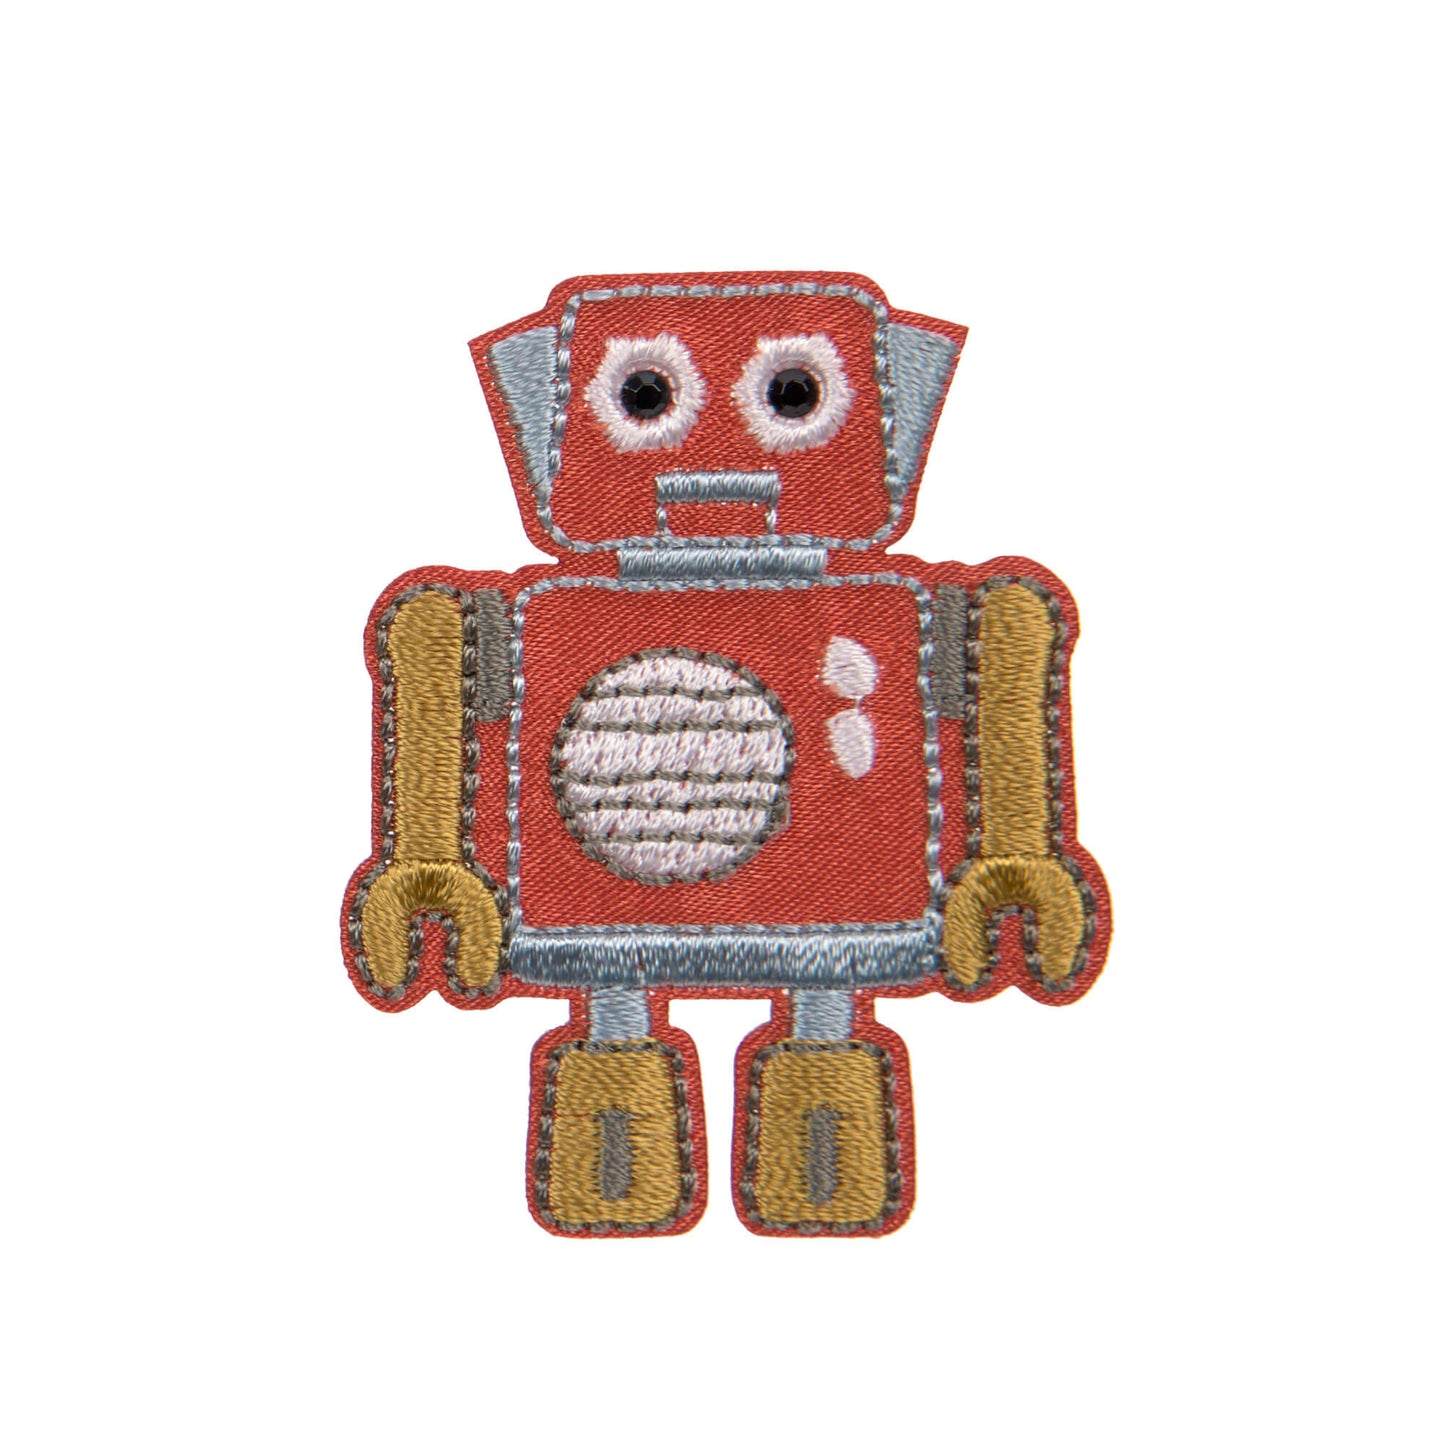 Textil-Sticker (3 Stk) - Schul Set Unique, Roboter